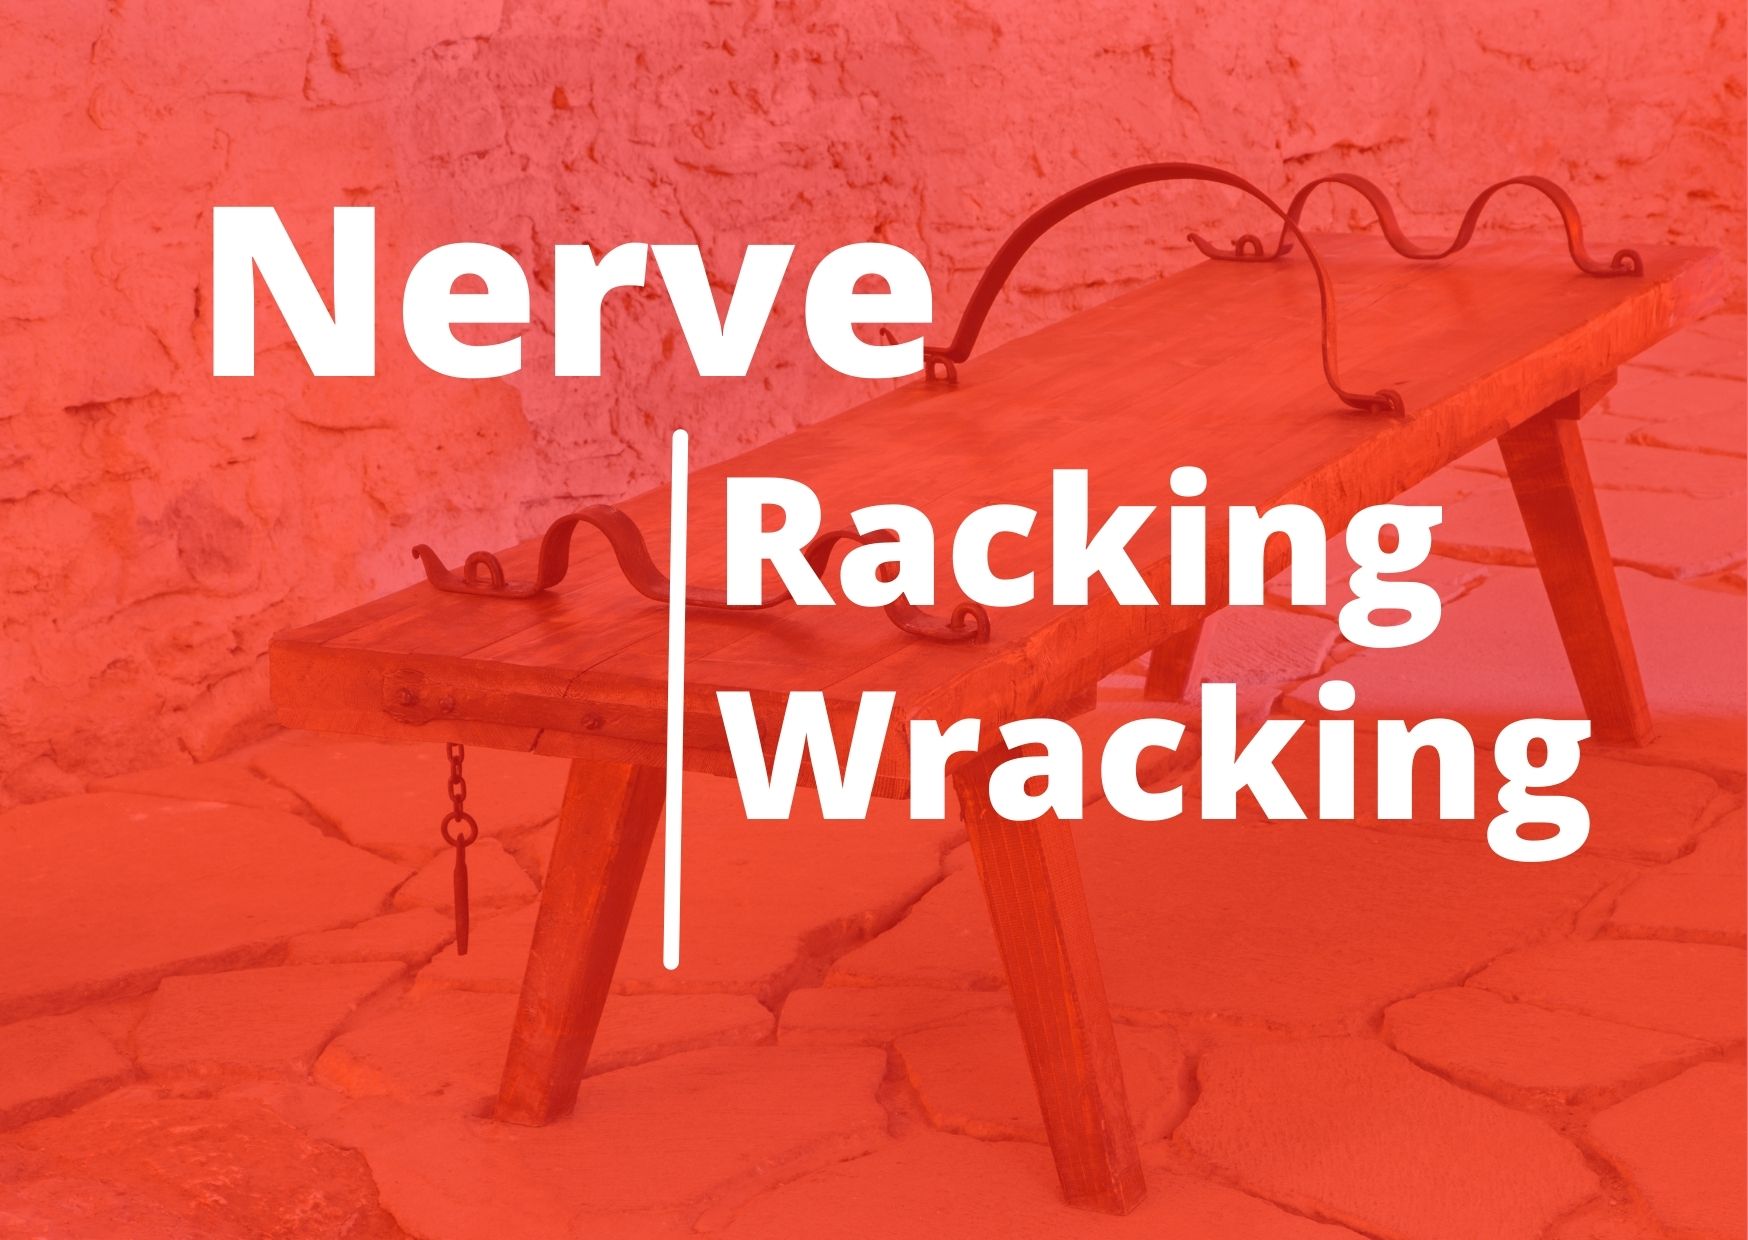 Nerve Racking or Nerve Wracking?